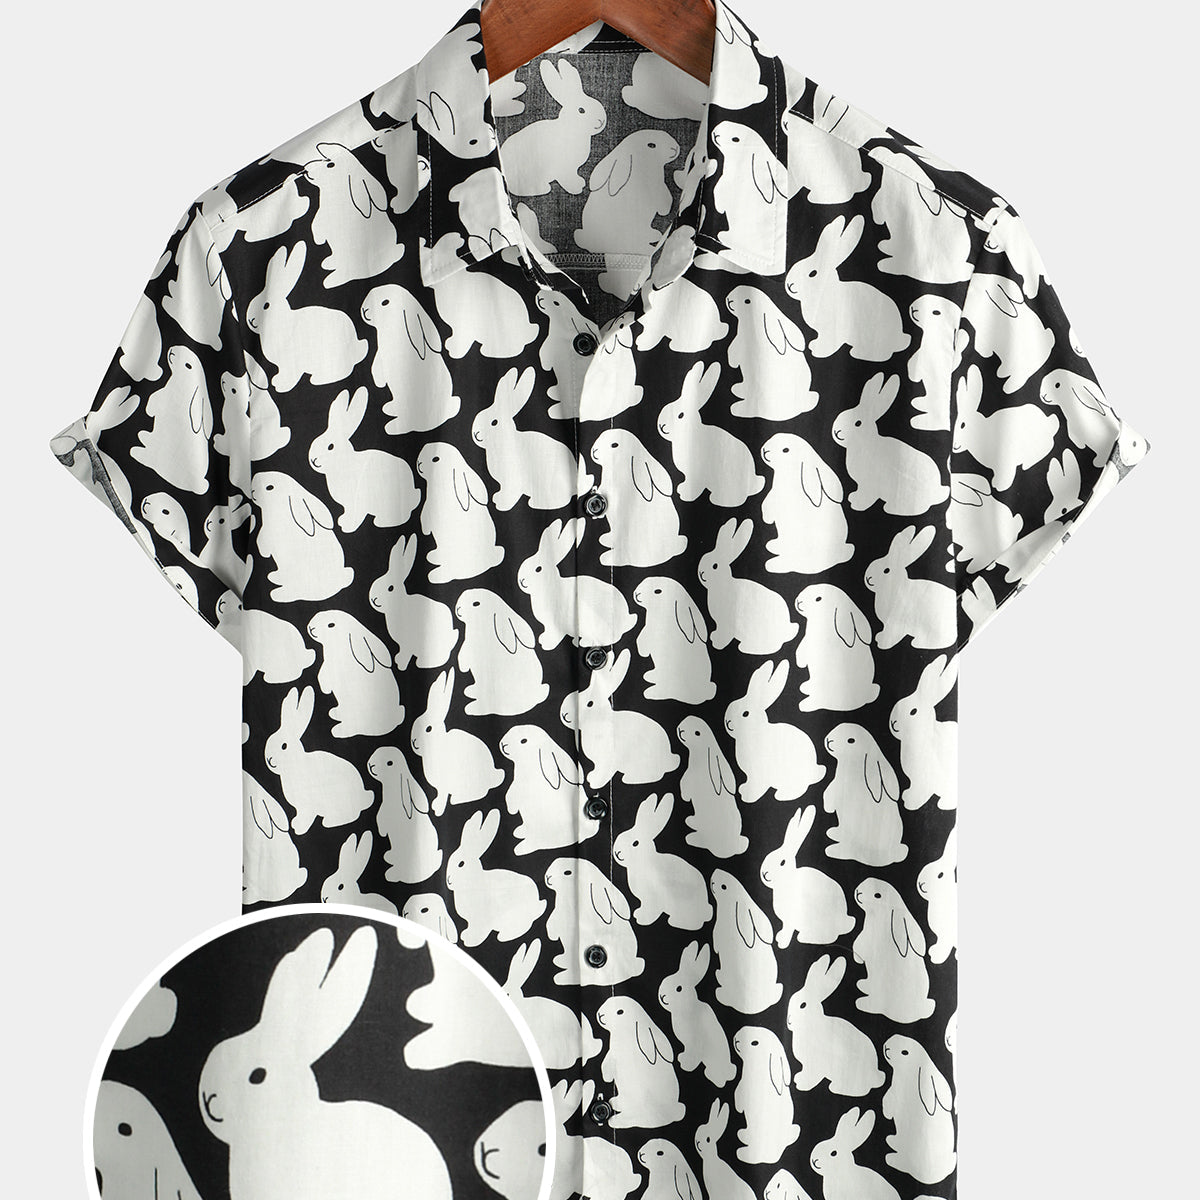 Chemise à manches courtes respirante en coton lapin mignon lapin imprimé animal pour homme